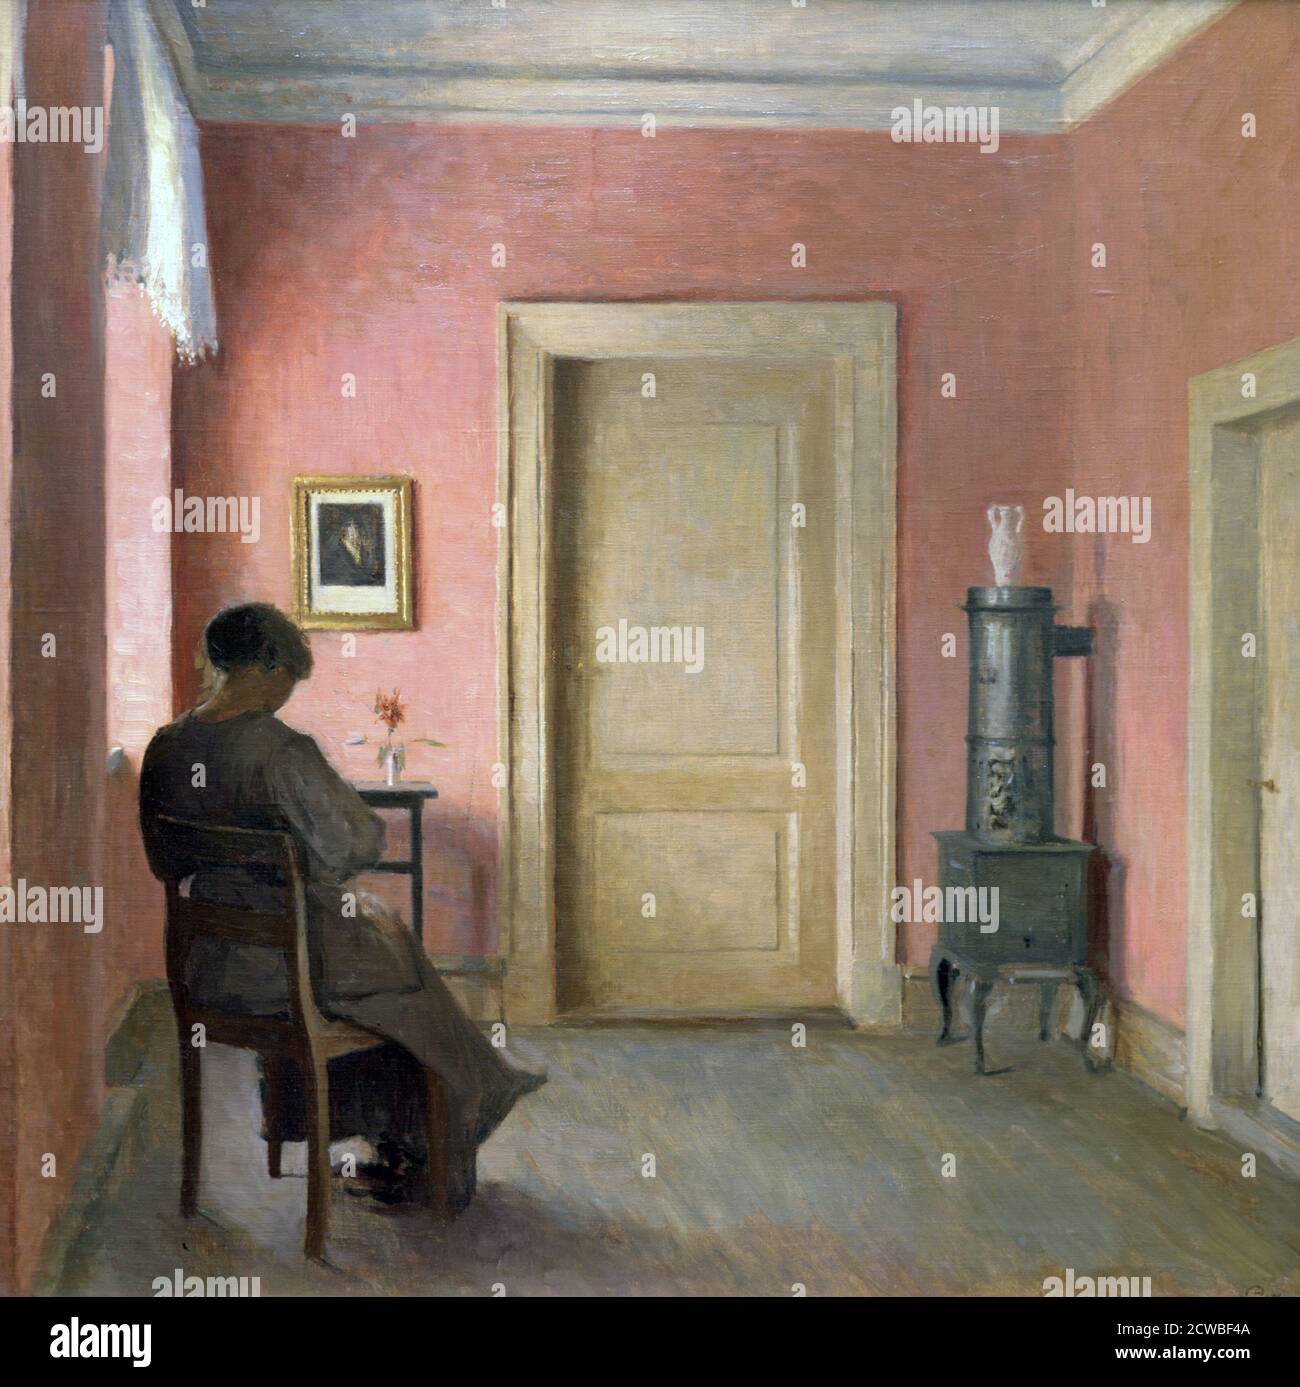 Femme assise dans un intérieur", 1915. Artiste: Peter Vilhelm Ilsted. Peter Ilsted (1861-1933) est un artiste et graveur danois. Il était le plus associé aux peintures de scènes intérieures domestiques. Banque D'Images